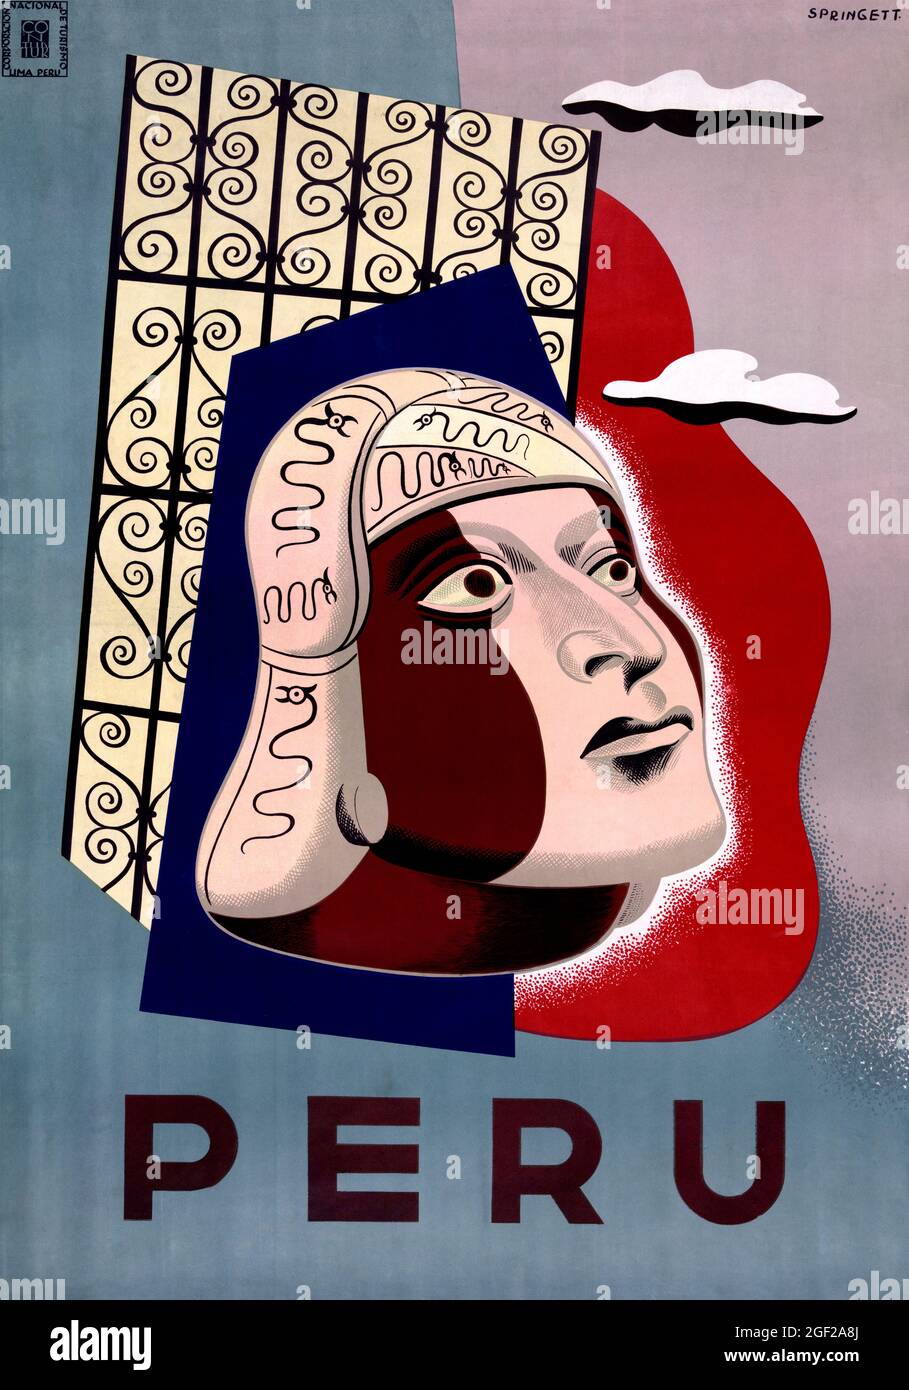 Pérou par Springett (dates inconnues). Affiche ancienne restaurée publiée dans les années 1950 au Pérou. Banque D'Images